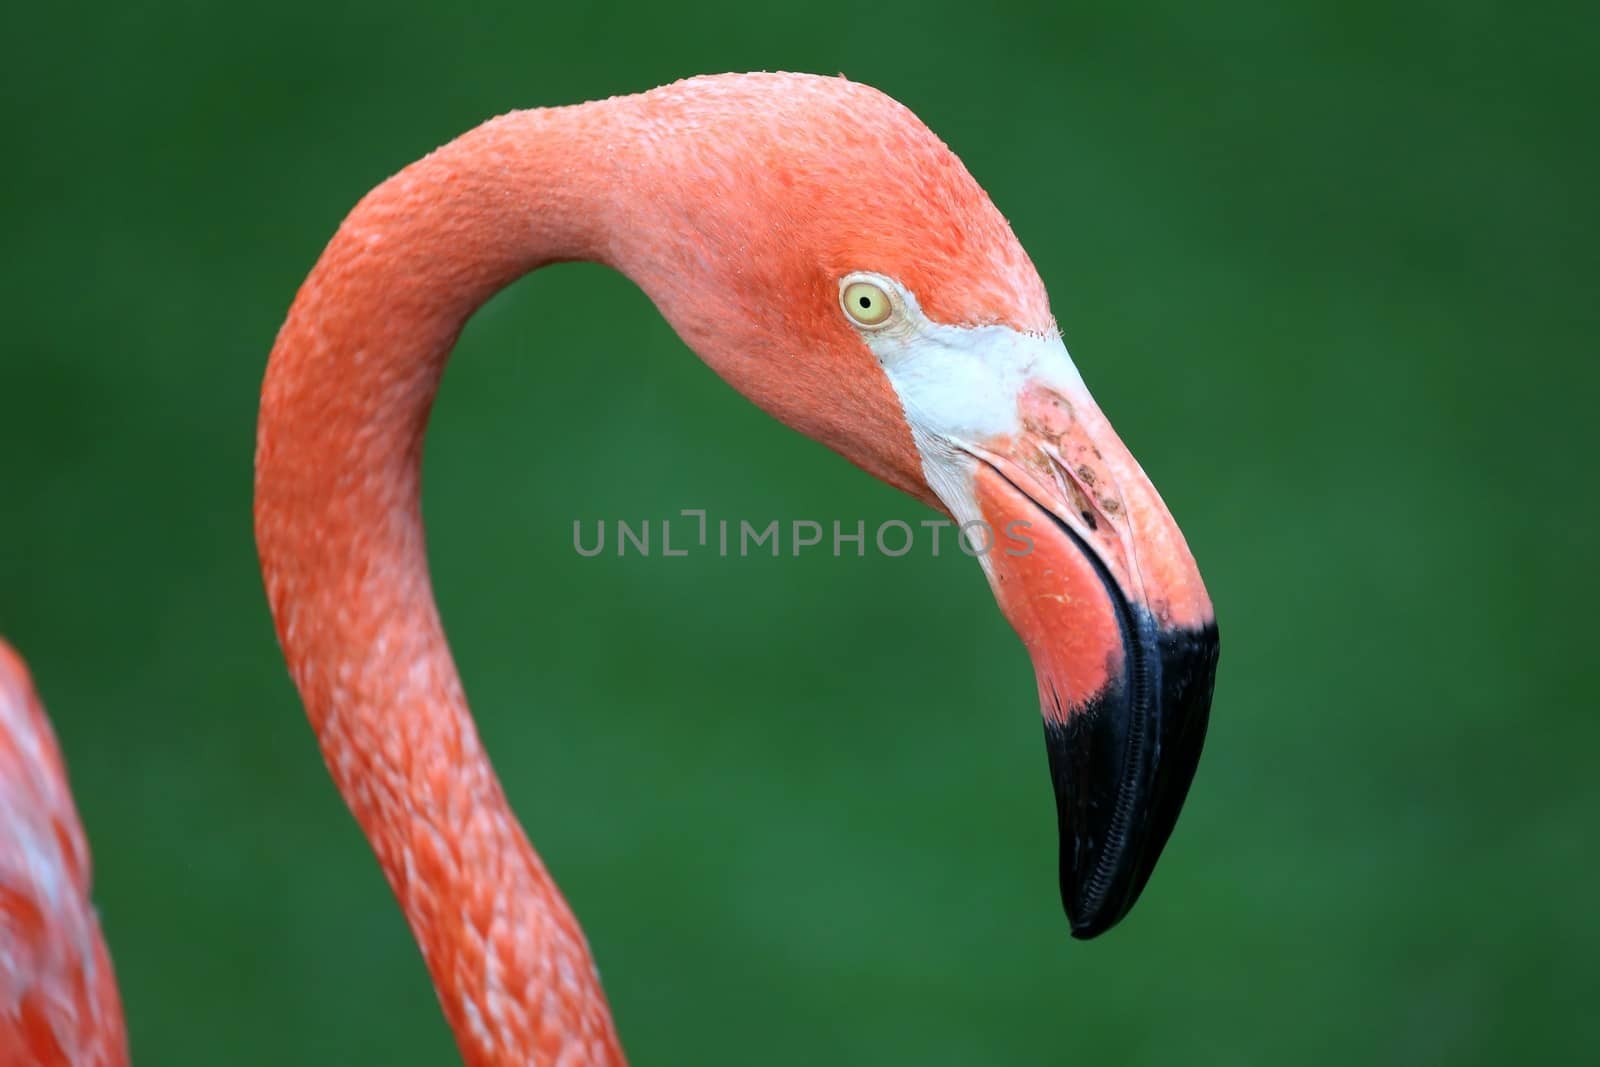 Graceful Pink Flamingo with a big beak